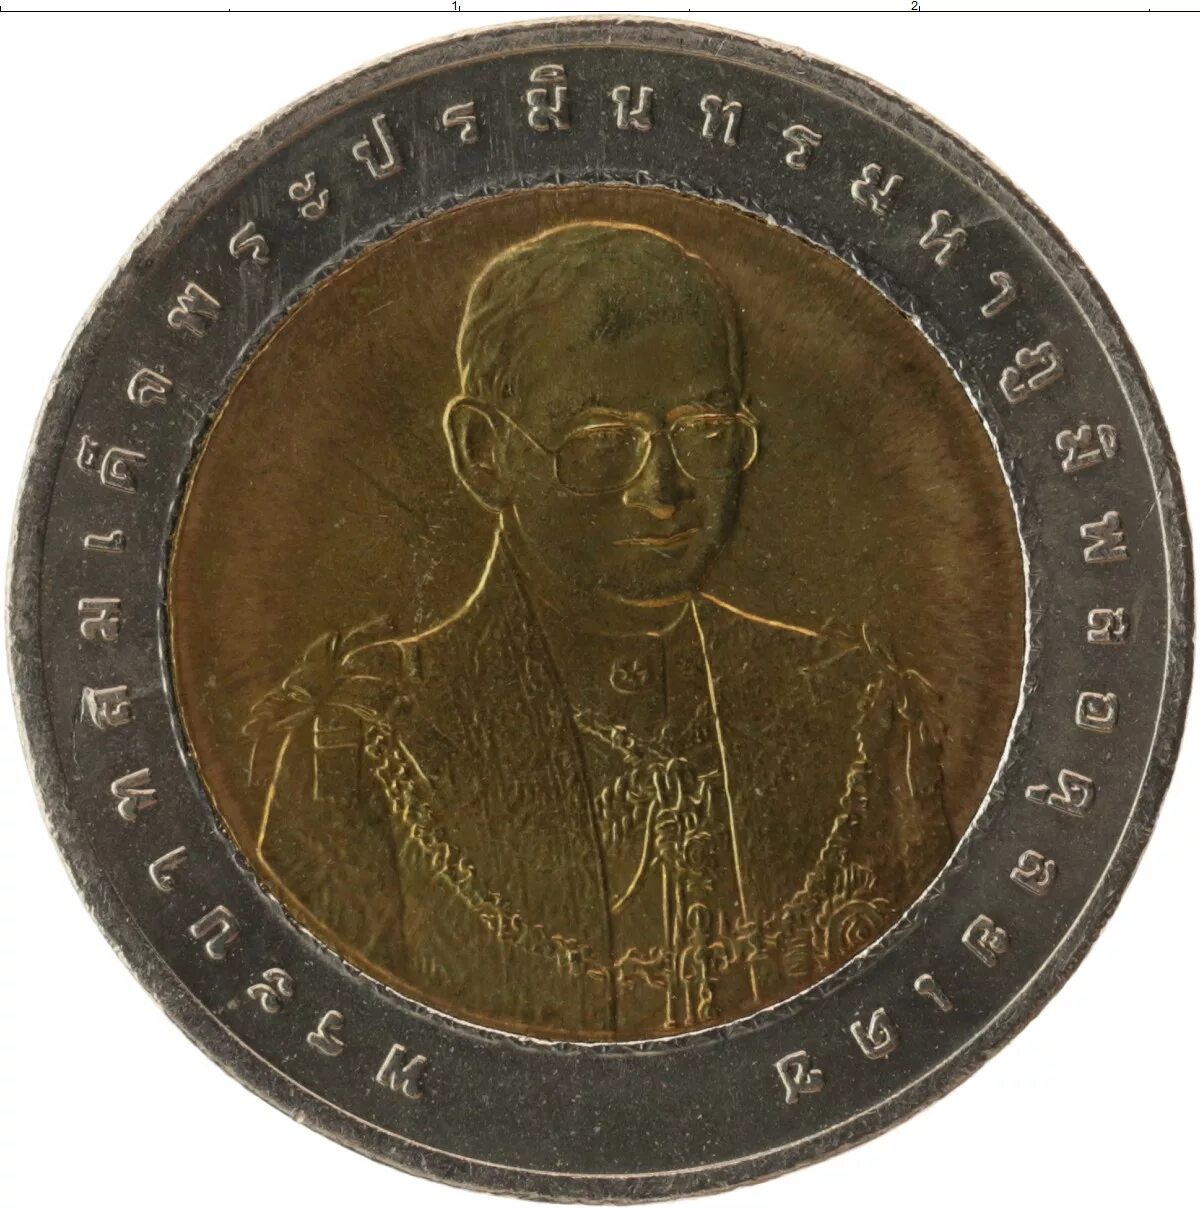 350 батов в рублях. 10 Бат монета. Тайские монеты номинал 10 Батт. Тайская монета 10 бат. Таиланд 2 бата, 2548 (2005).